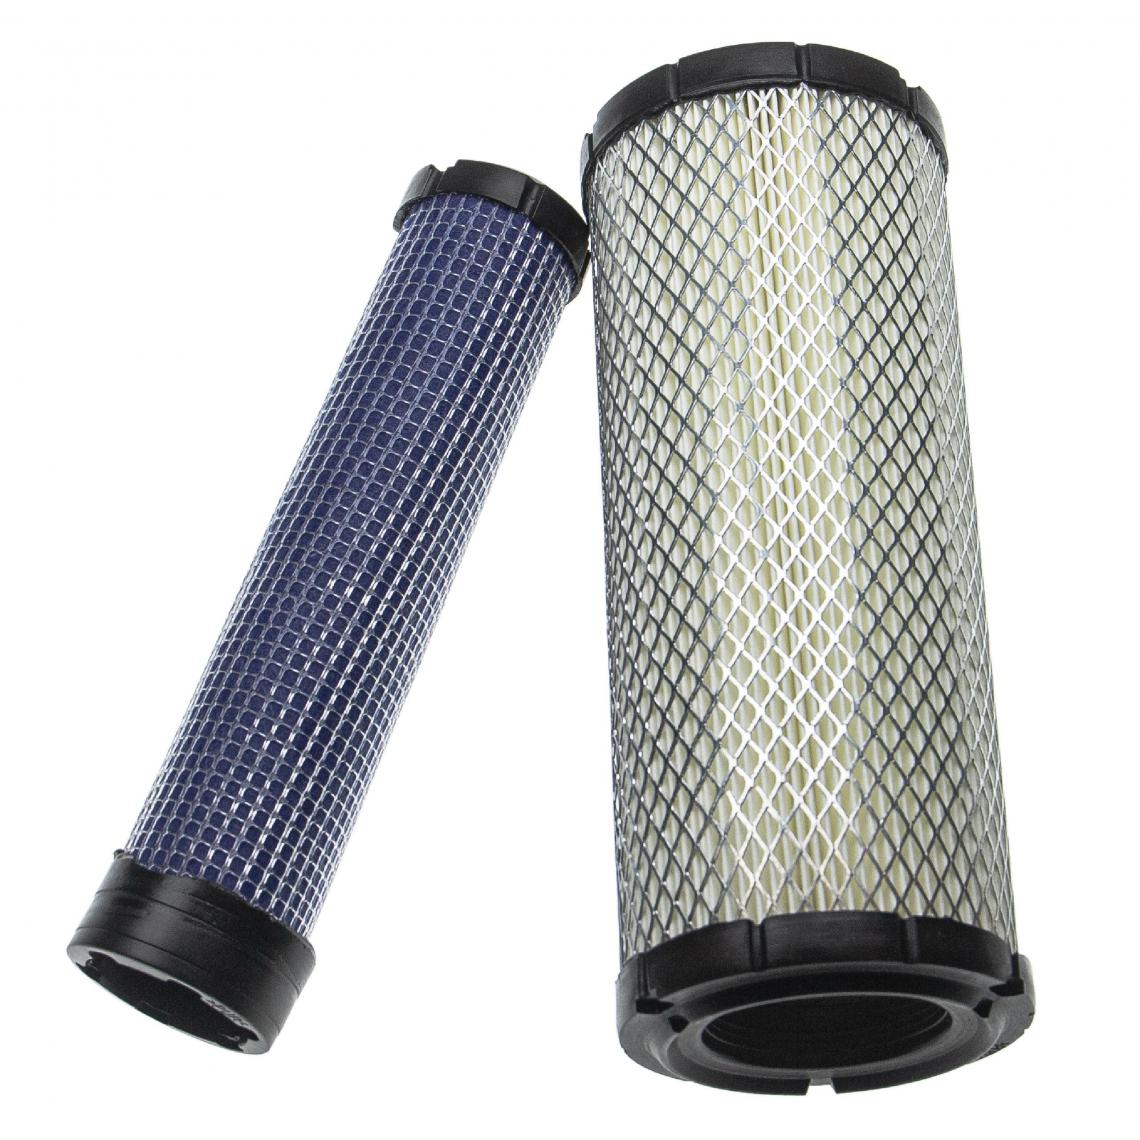 Vhbw - vhbw Lot de filtres compatible avec Caterpillar 303.5, 303C CR, 304, 304.5, 304C CR, 304CR engin de chantier; 1x filtre interne, 1x filtre extérieur - Autre appareil de mesure